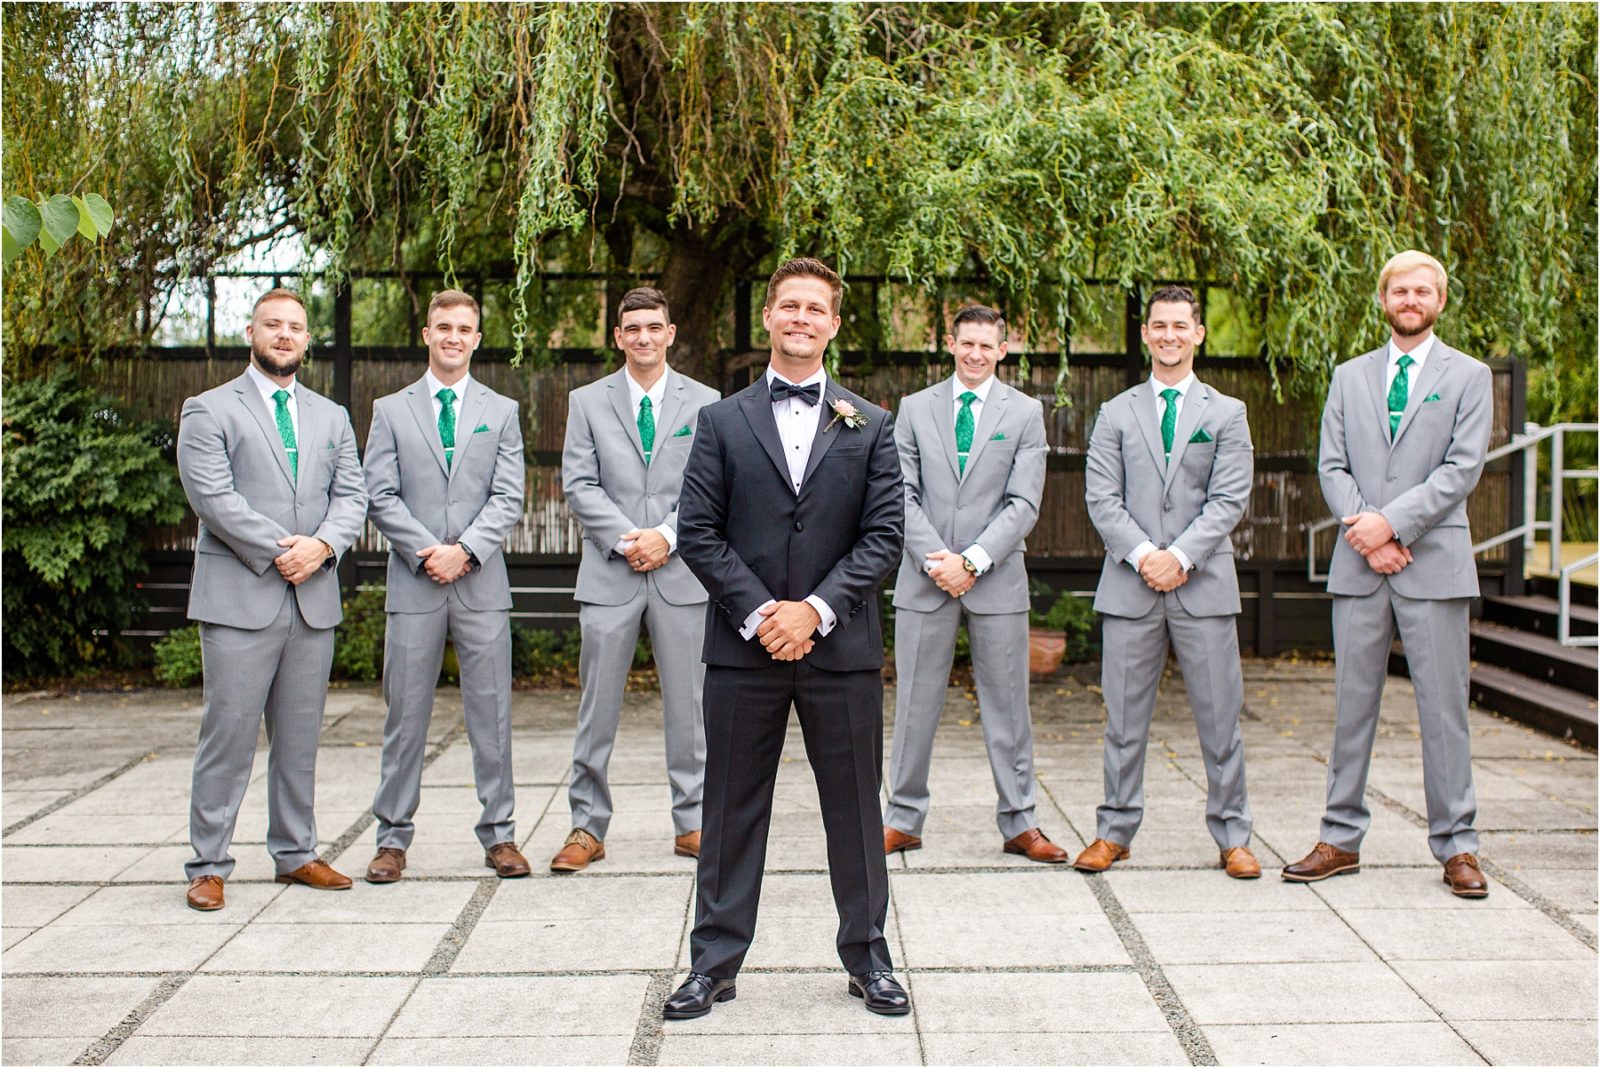 Groom in tux with groomsmen in grey suits